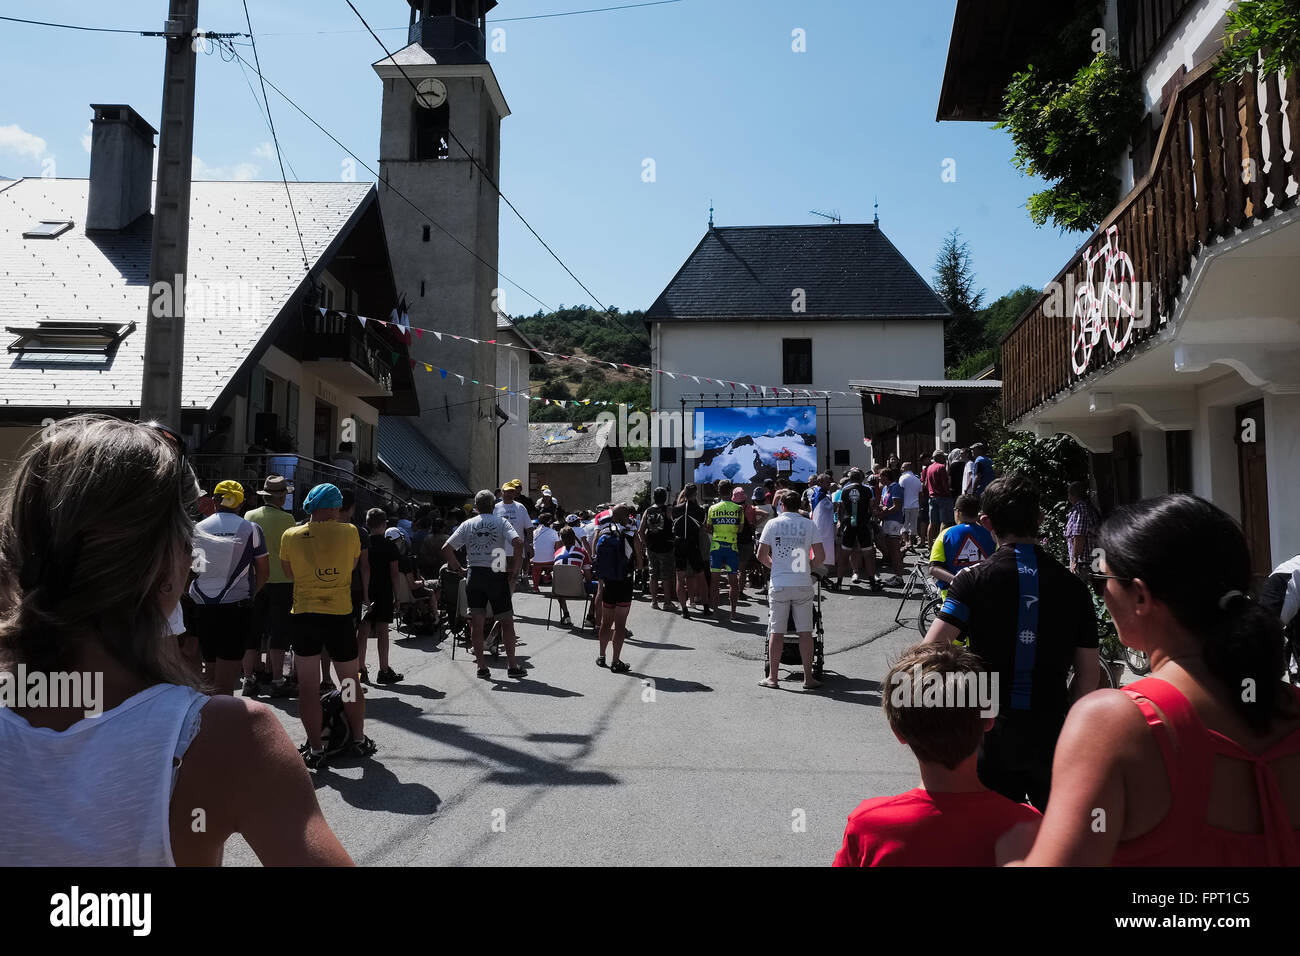 Menschen versammelten sich in einer kleinen Stadt rechtwinklig zur Tour ansehen de France 2015 auf einer großen Leinwand vor der Fahrer tatsächlich übergibt die Stadt Stockfoto